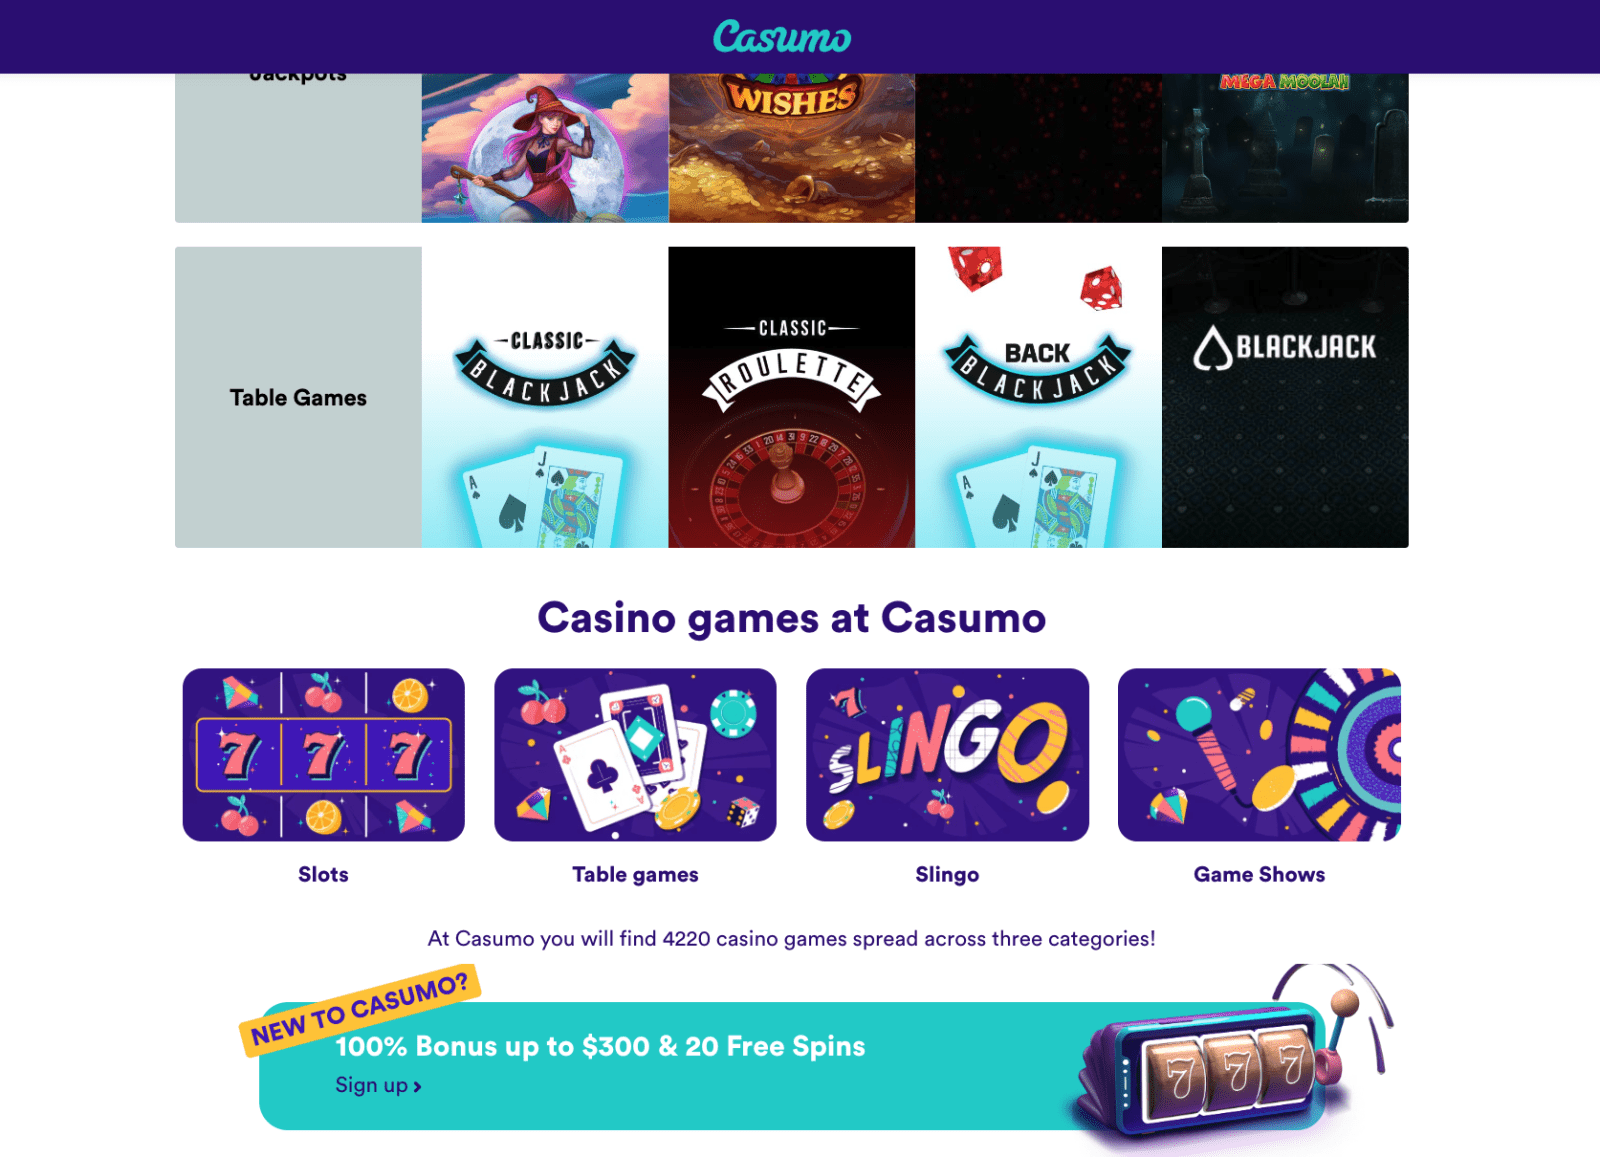 Casumo Juegos de Casino